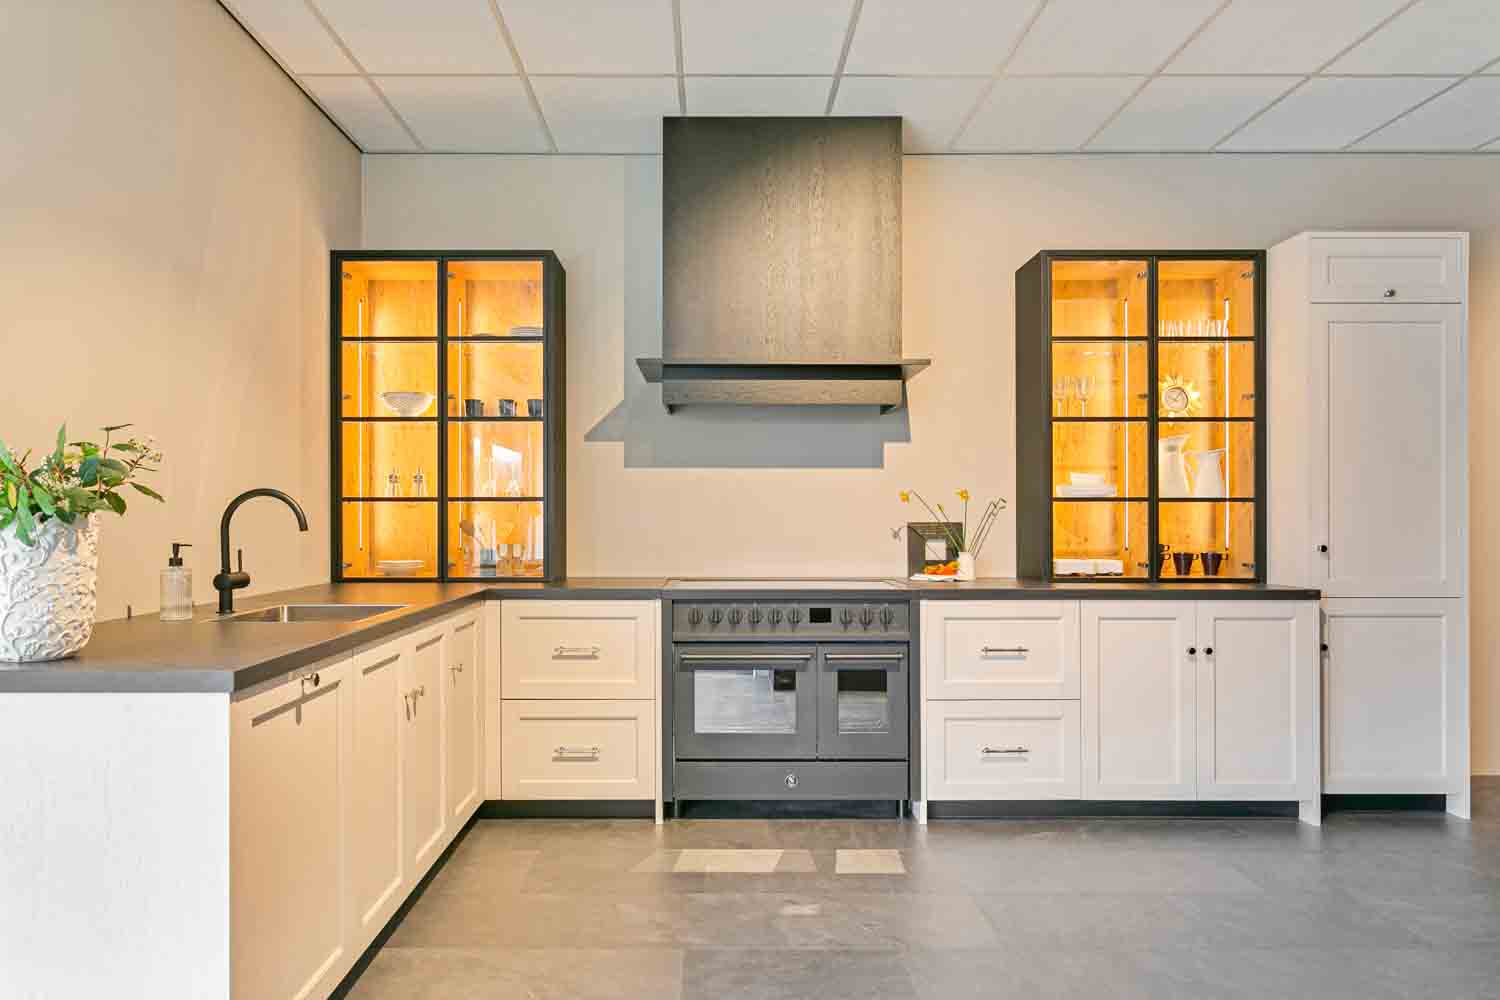 d' Achteromme Nieuwerkerk landelijke keuken wit met vitrinekasten